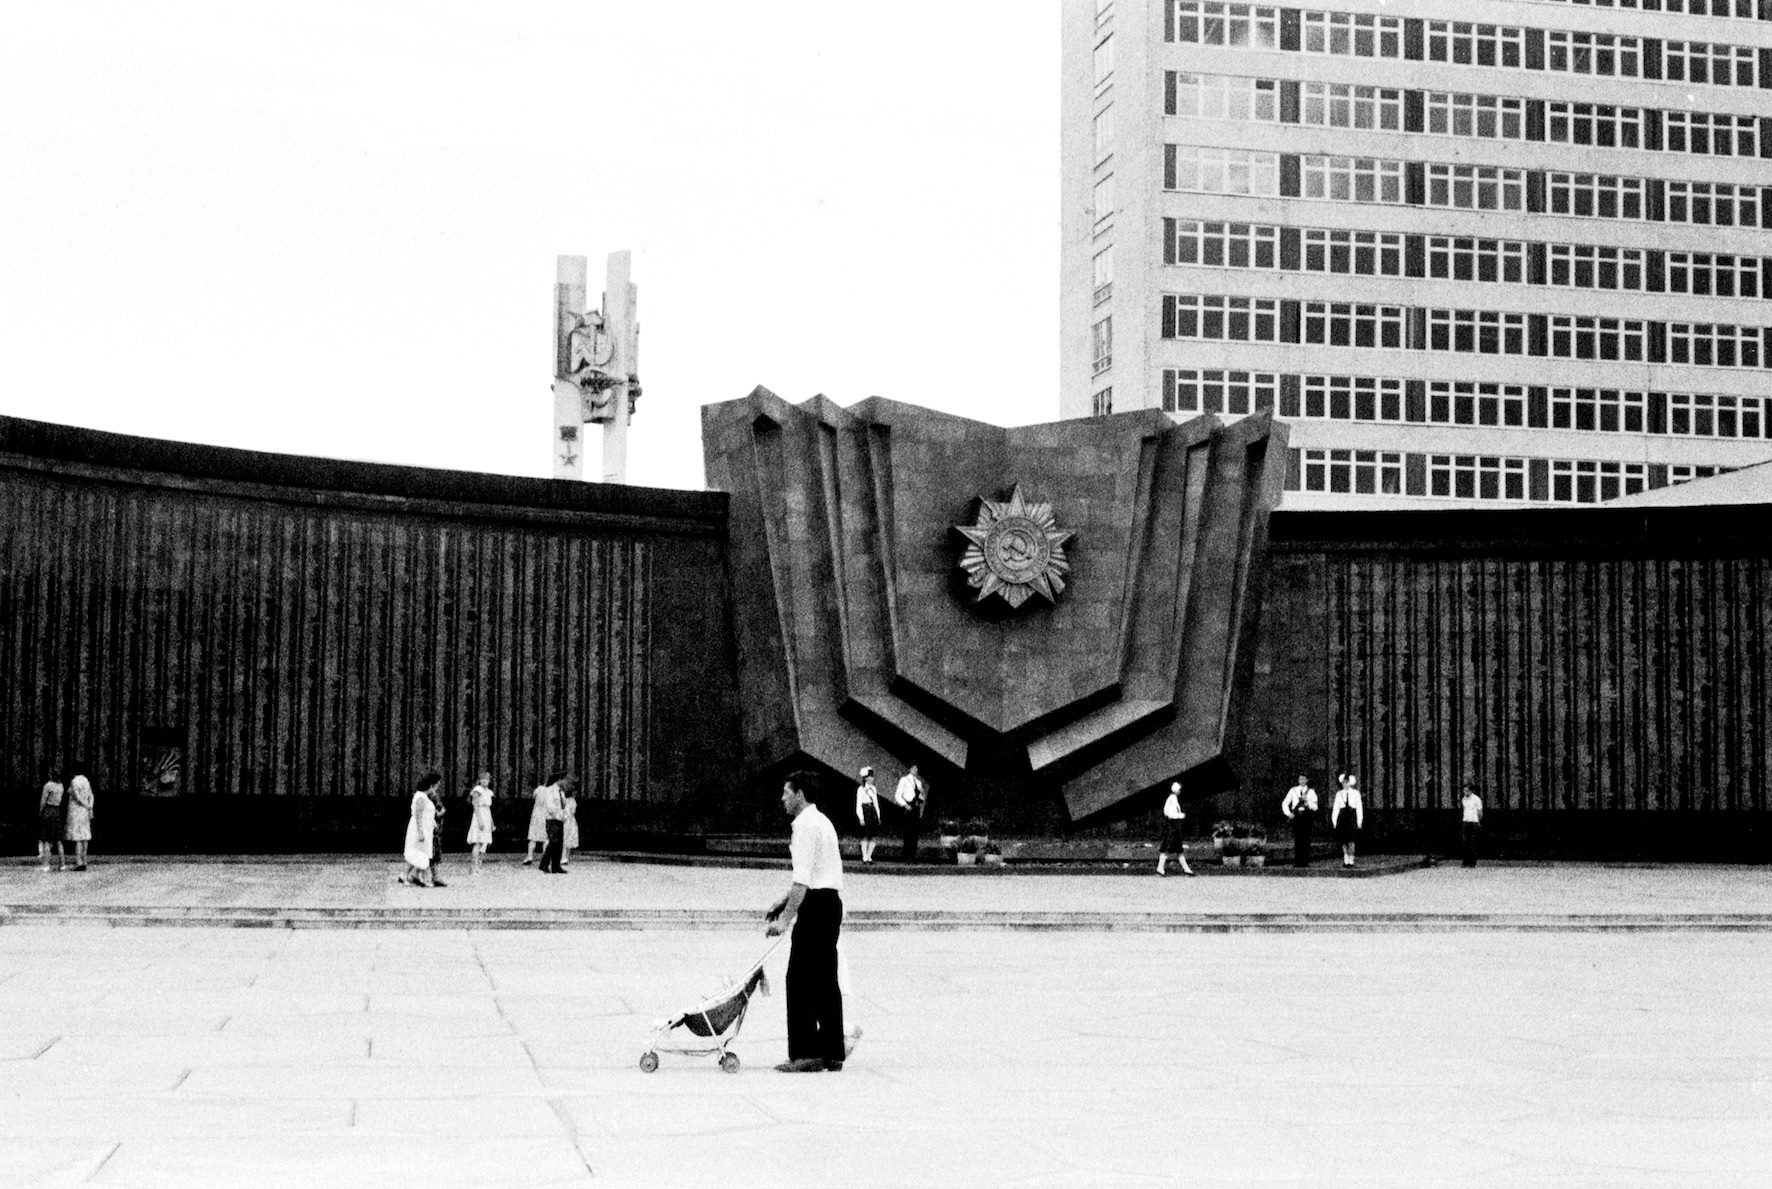 Площадь Славы, Хабаровск, 1985. Фотограф Игорь Пальмин